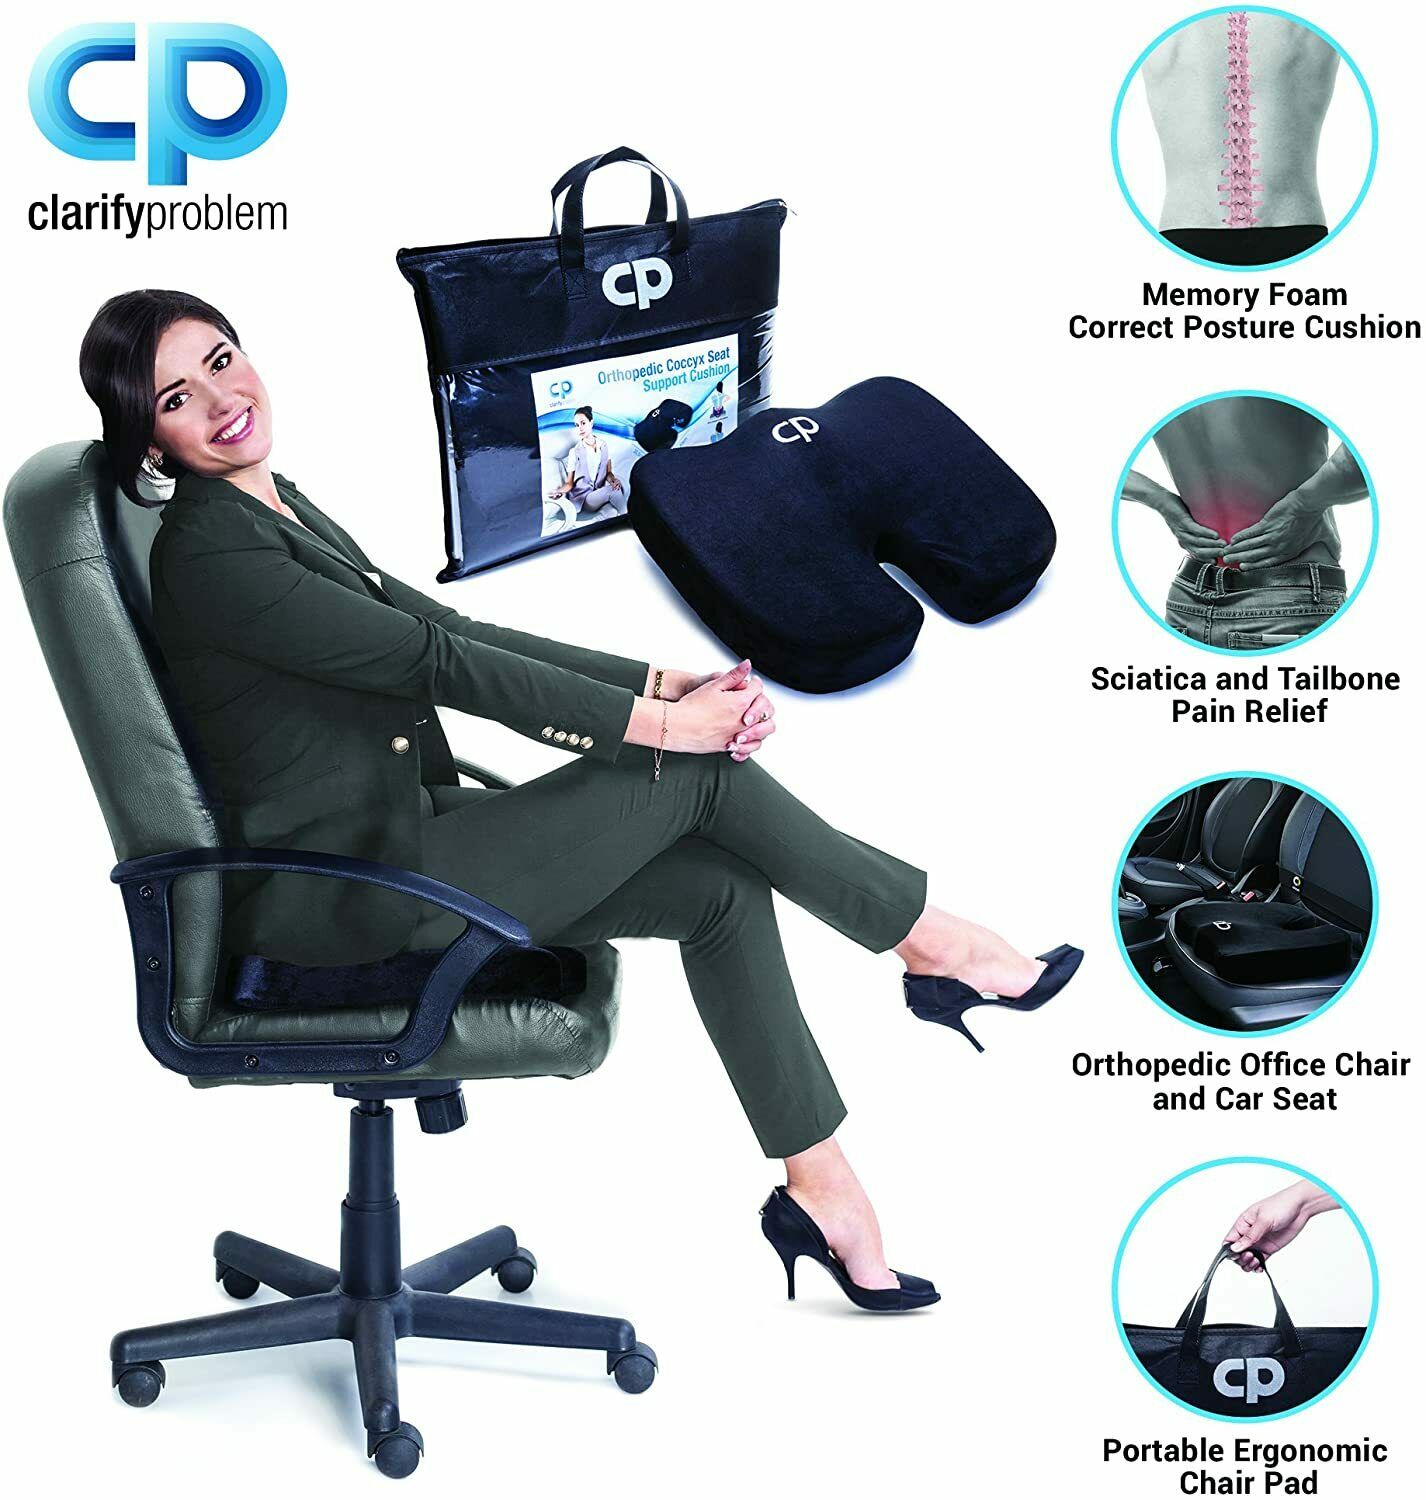 Cuscino Ergonomico Sedia Ufficio, (Cuscino Da Seduta+Cuscino Lombare)  Supporto Per Fianchi E Vita,Staccabile, Traspirante,Antistress, Cuscino  Coccige